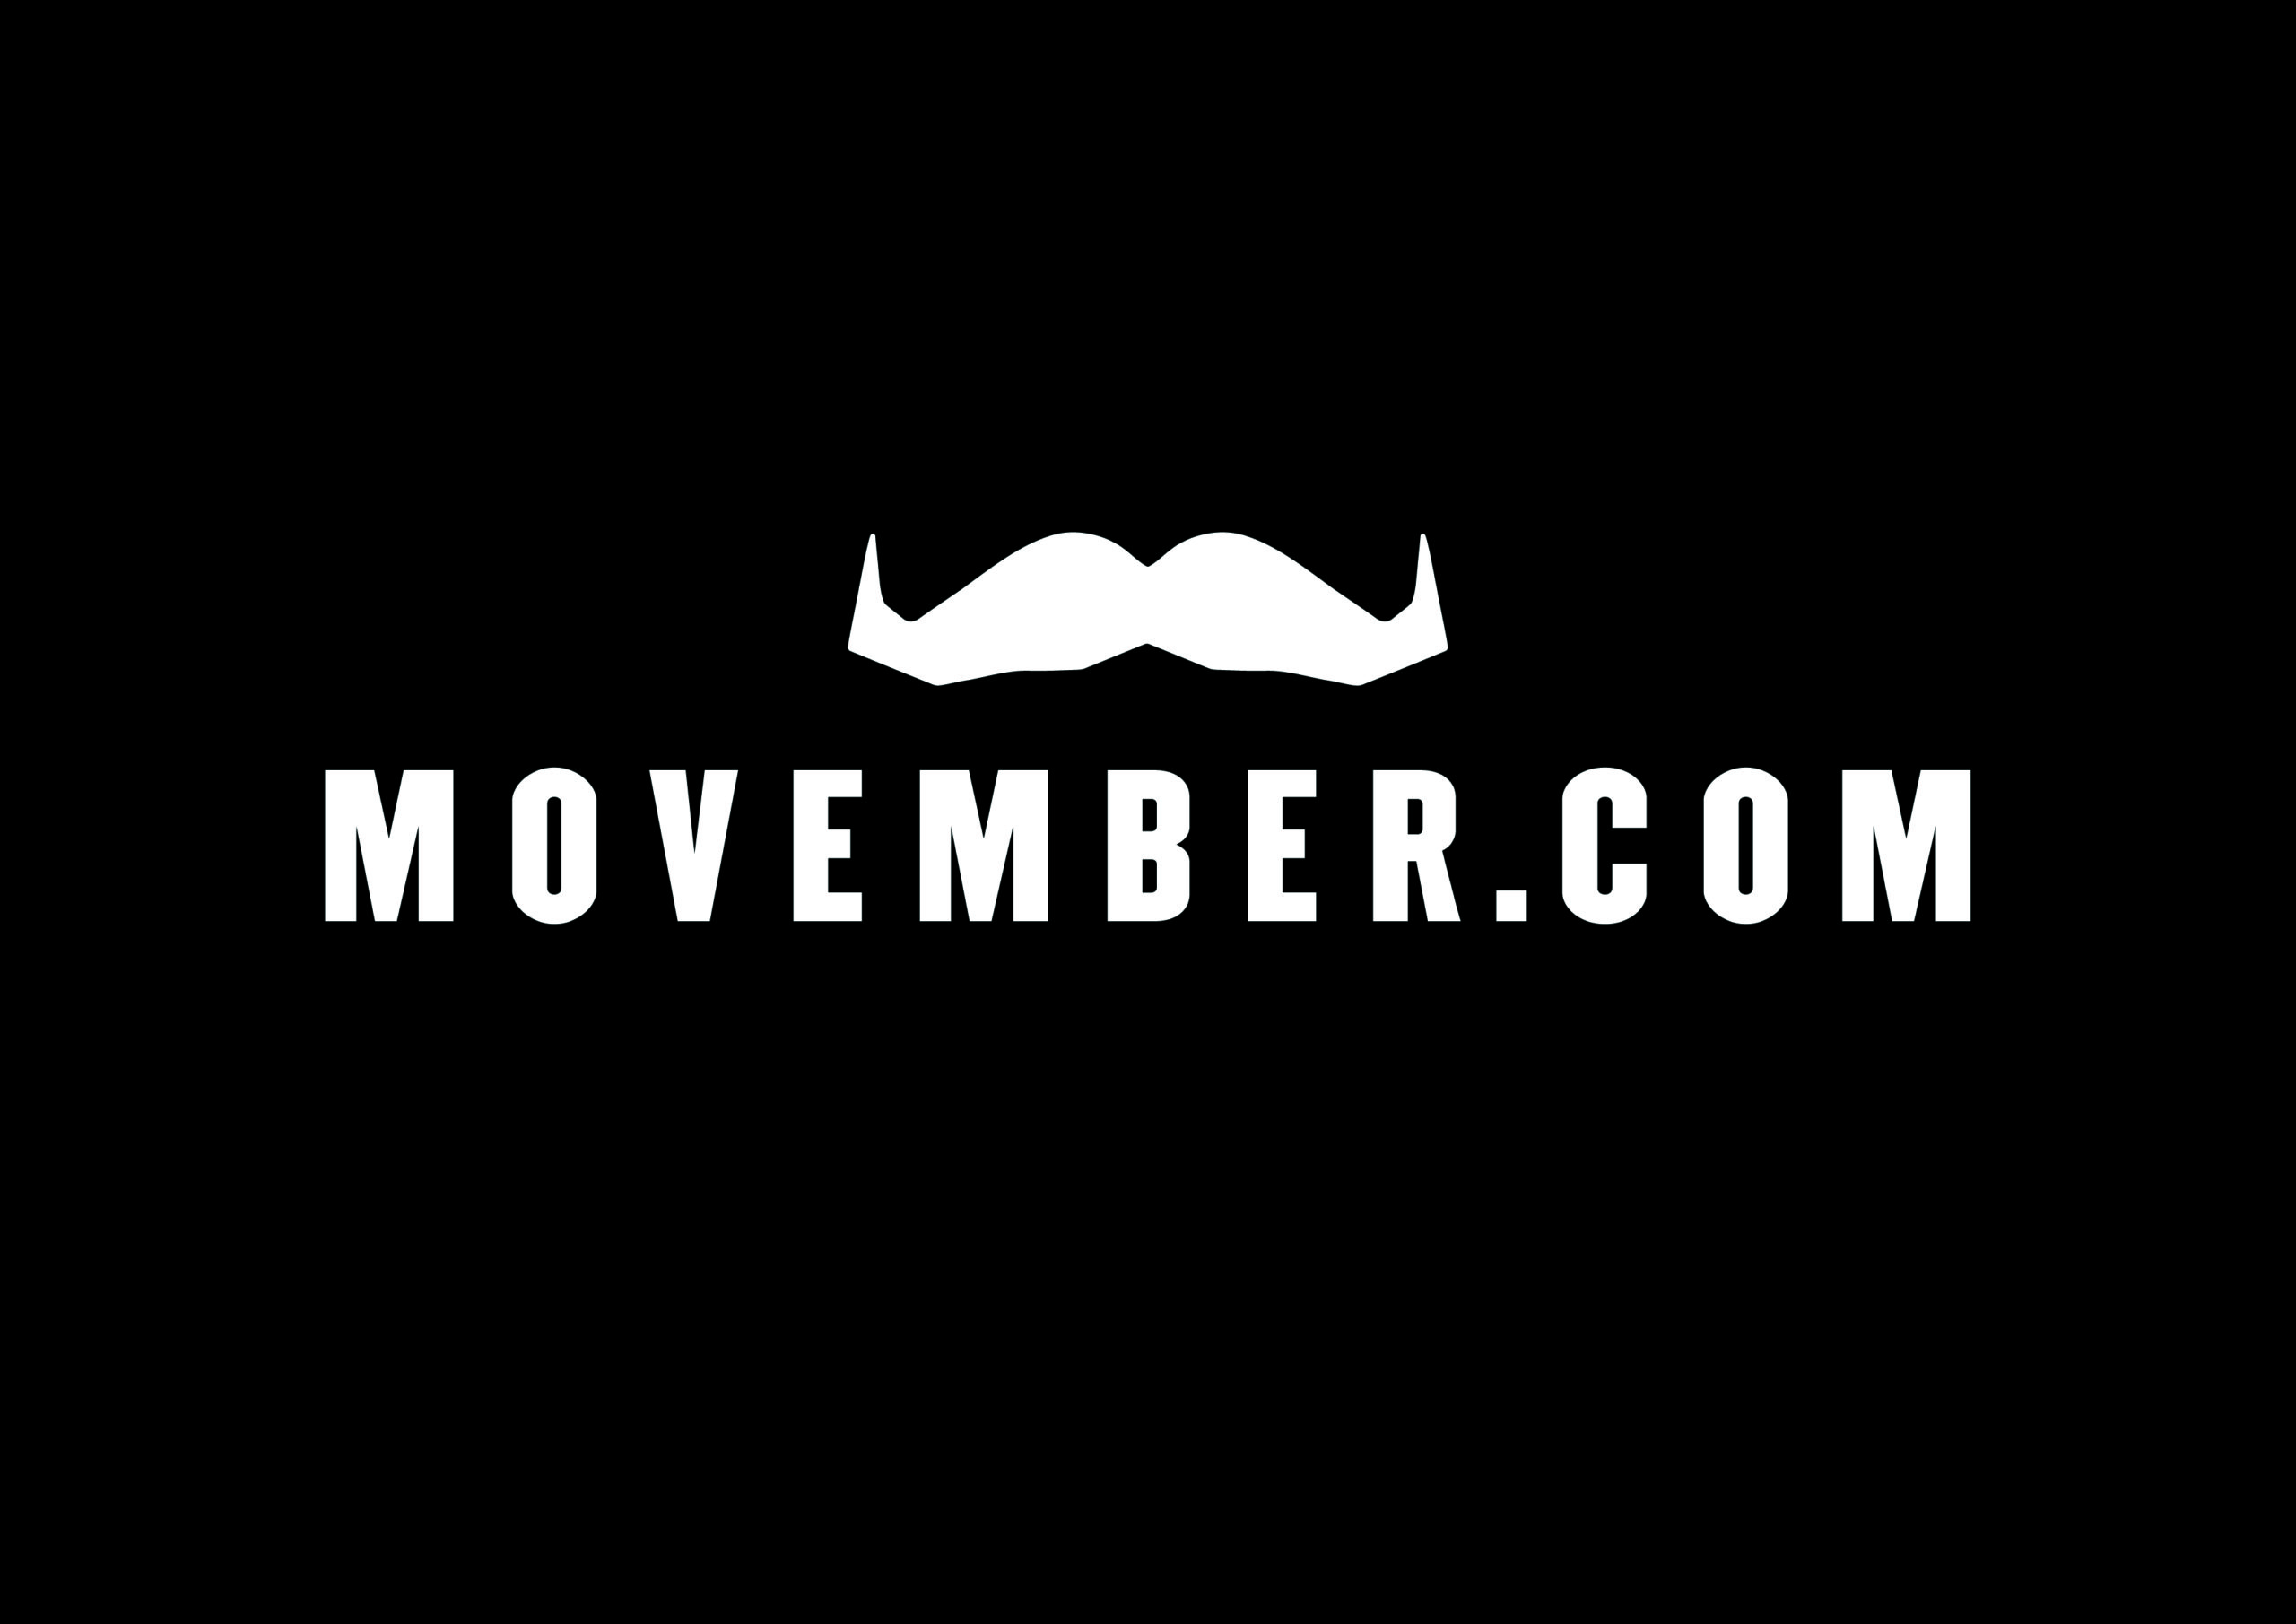 Movember.com - Men's Mental Health